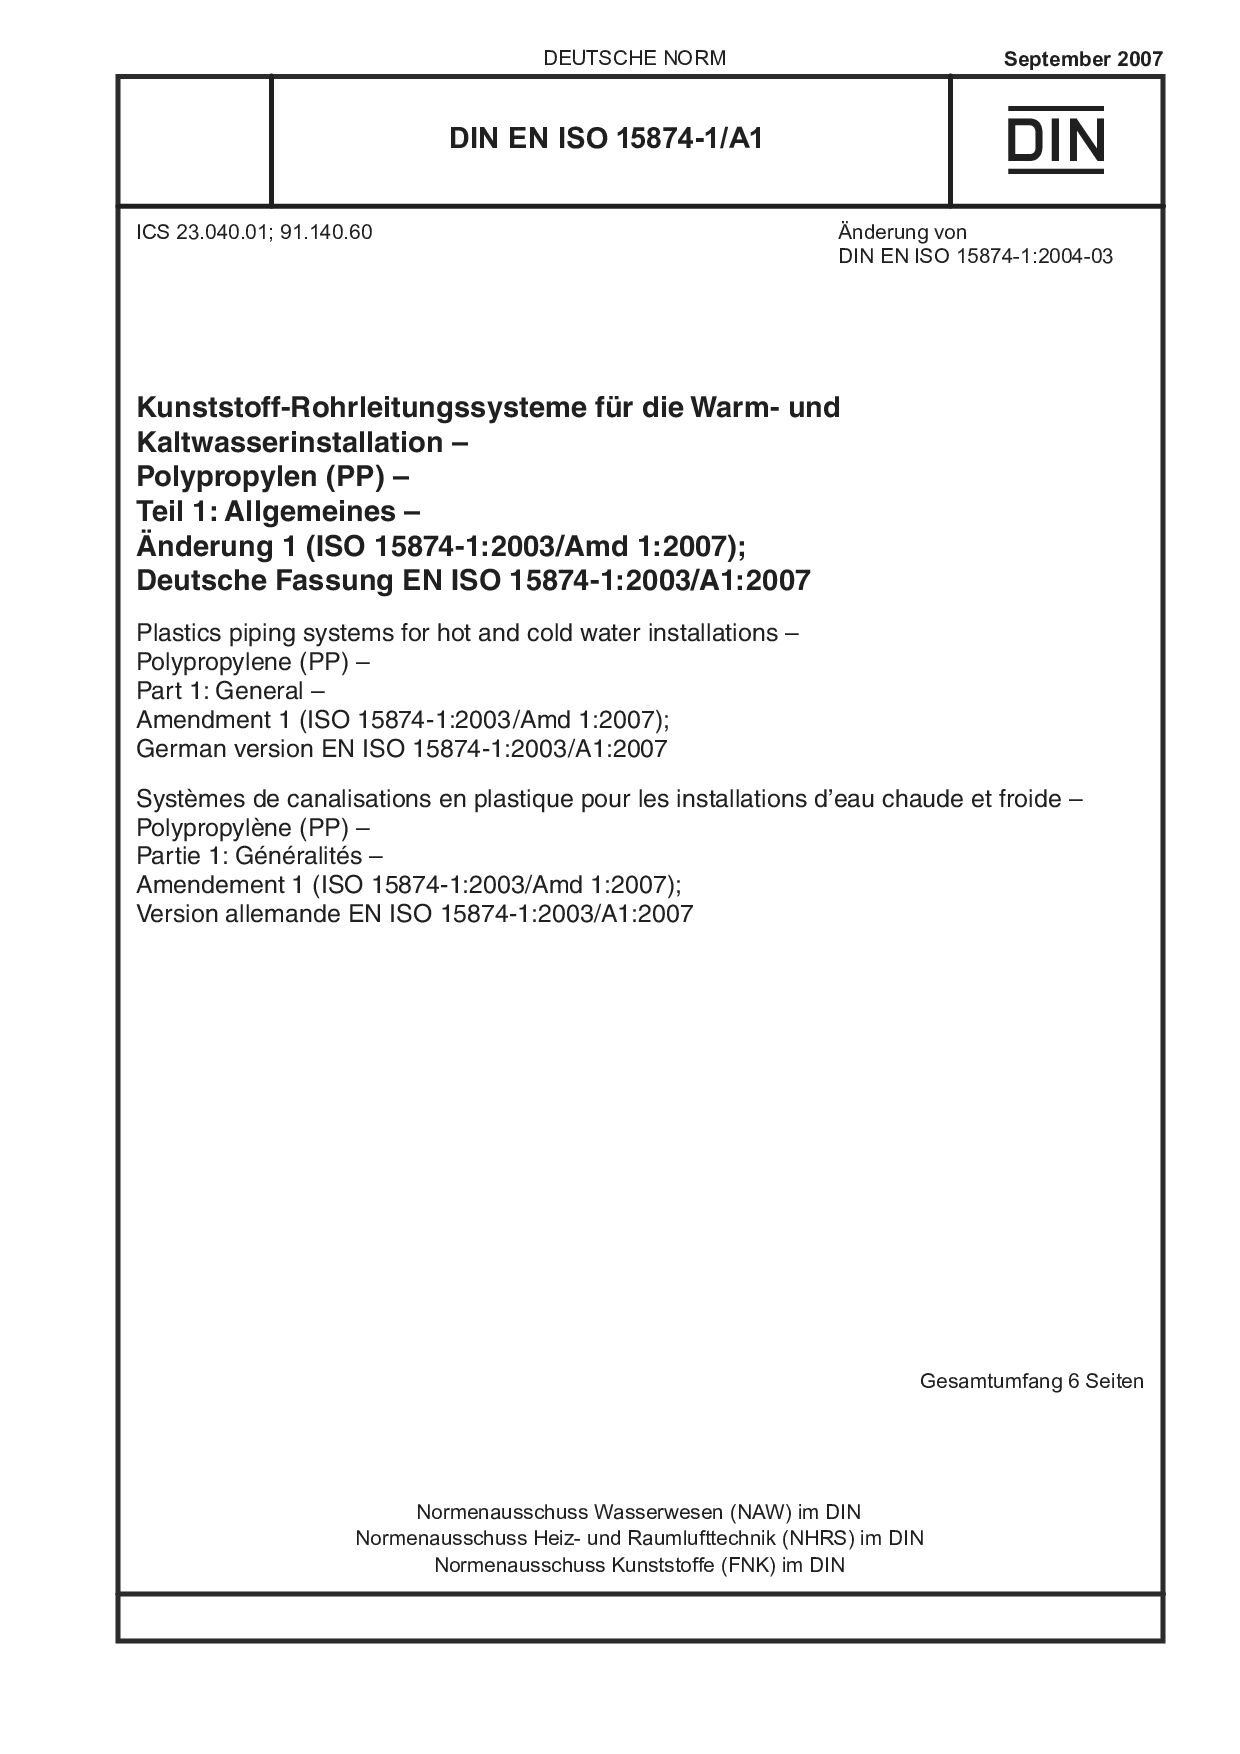 DIN EN ISO 15874-1/A1:2007封面图